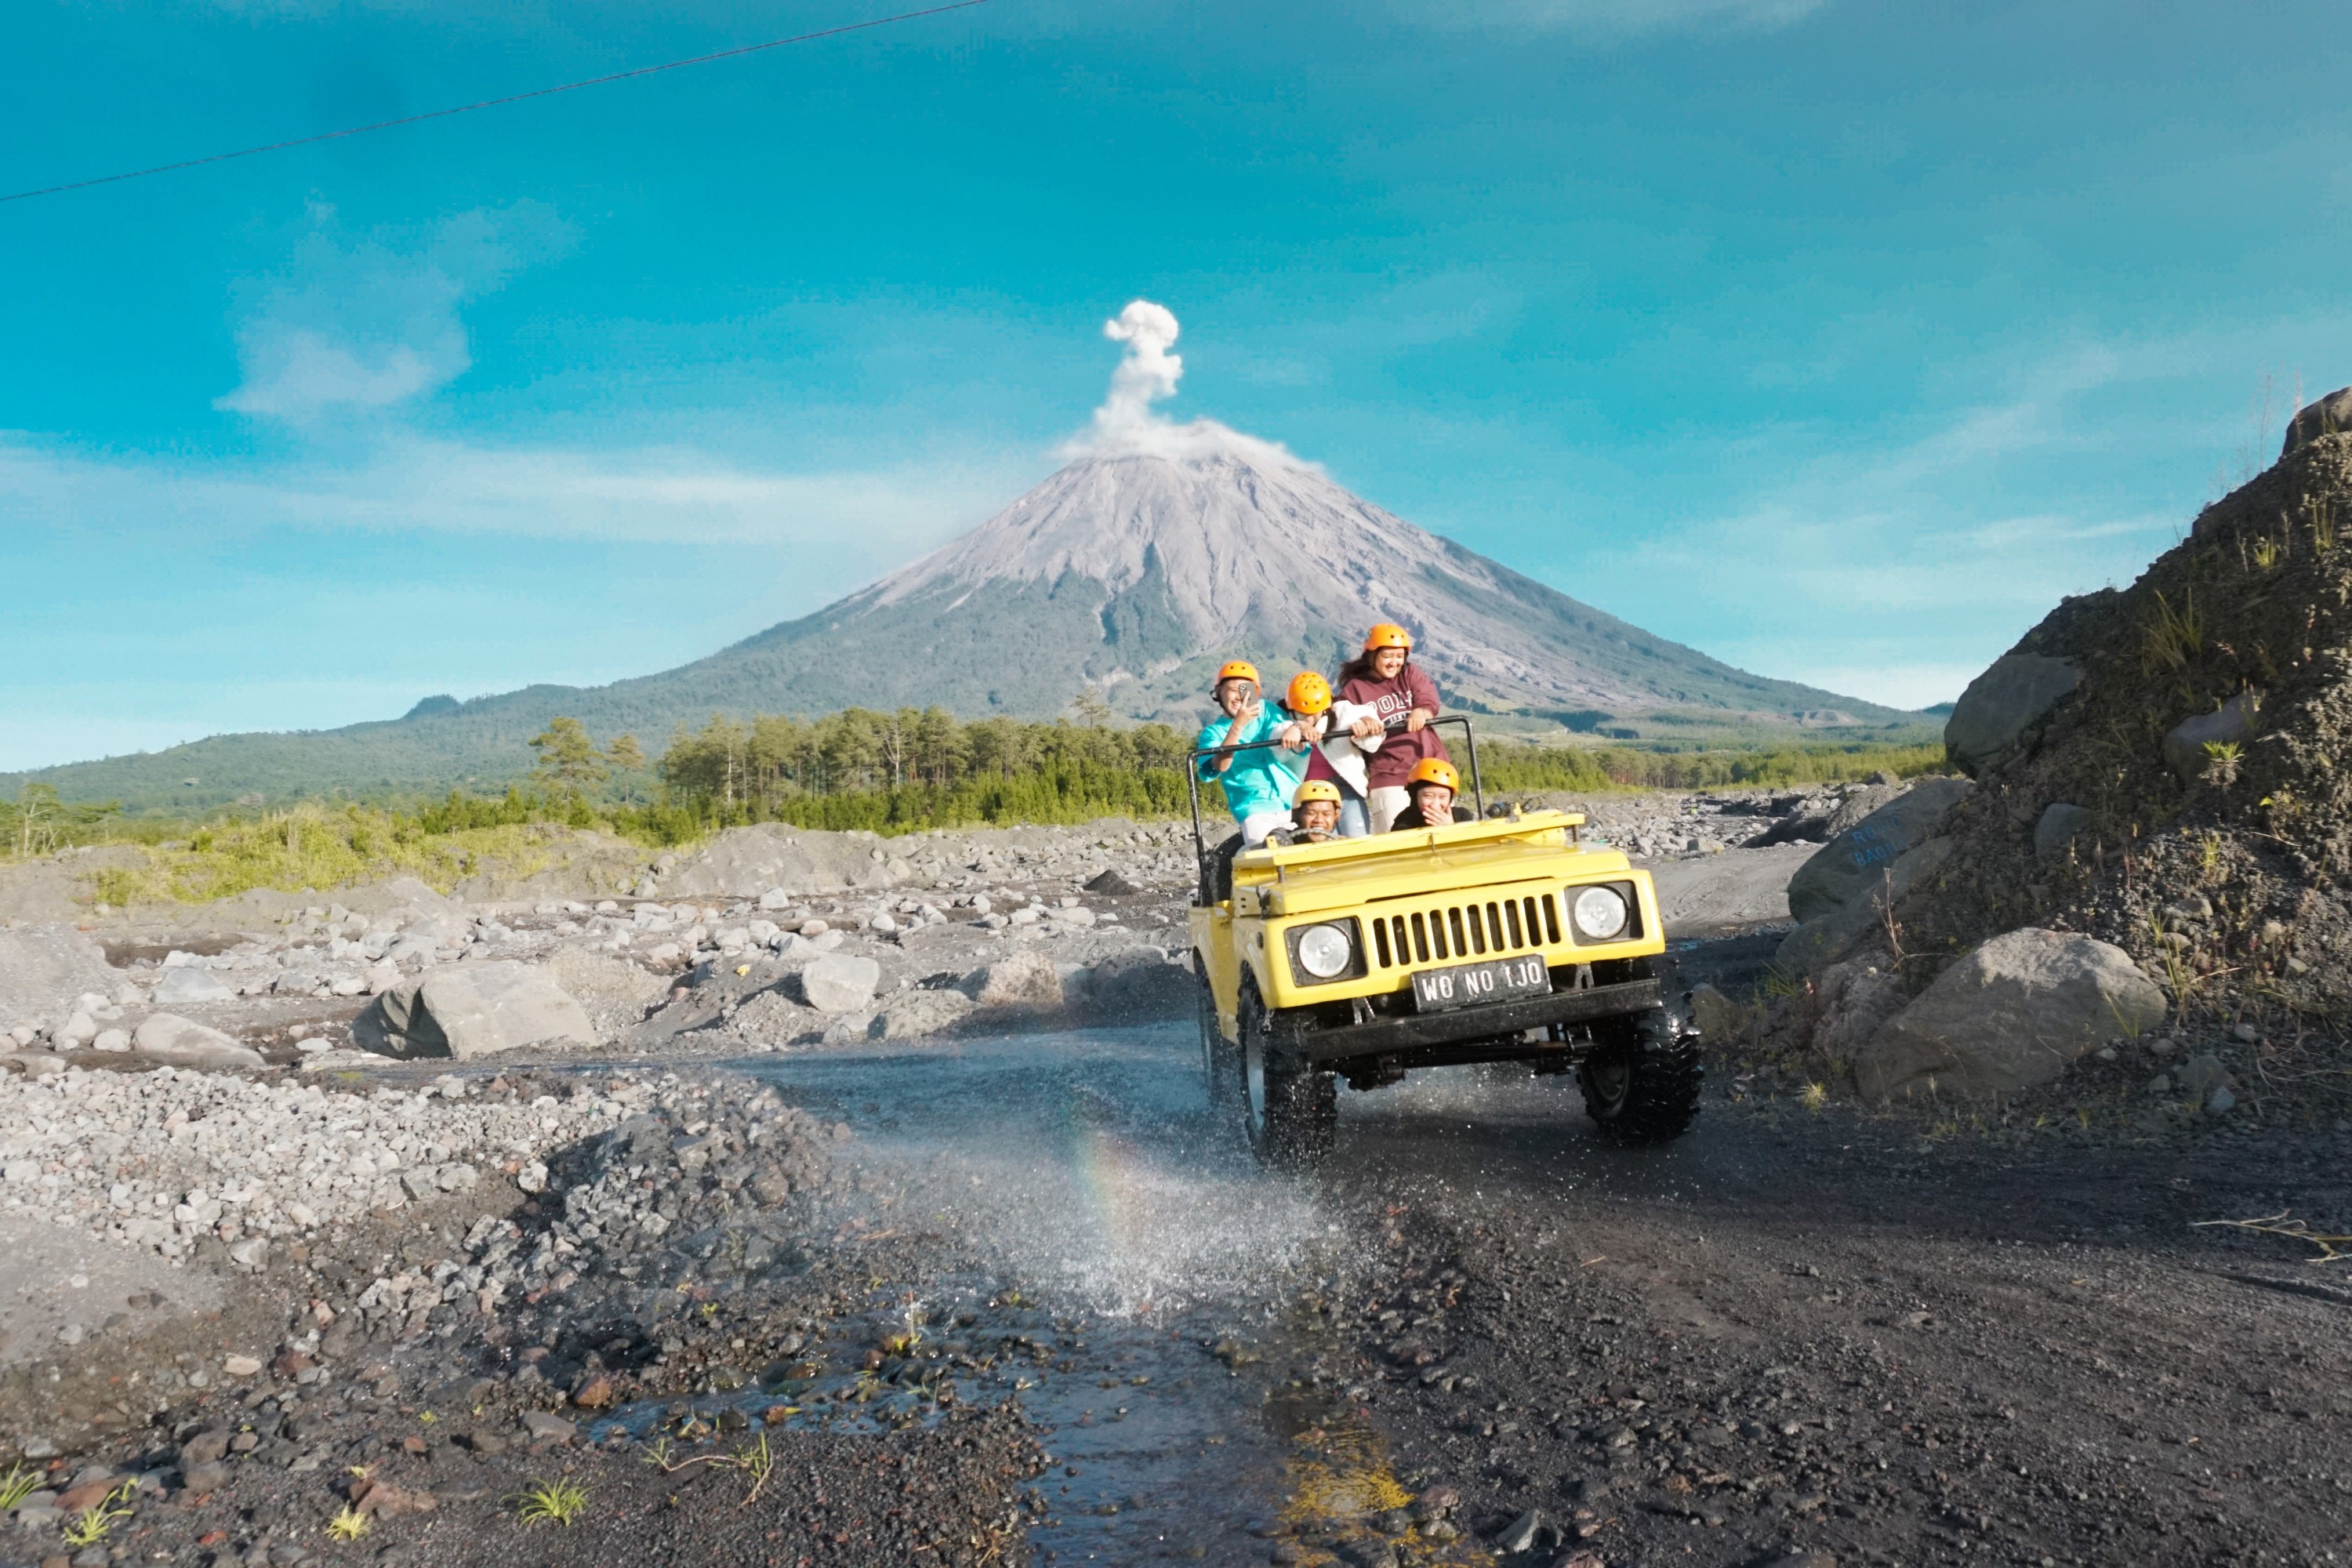 吉普車遊覽塞梅魯火山日出 & 瑪瑯的 Kapas Biru 瀑布